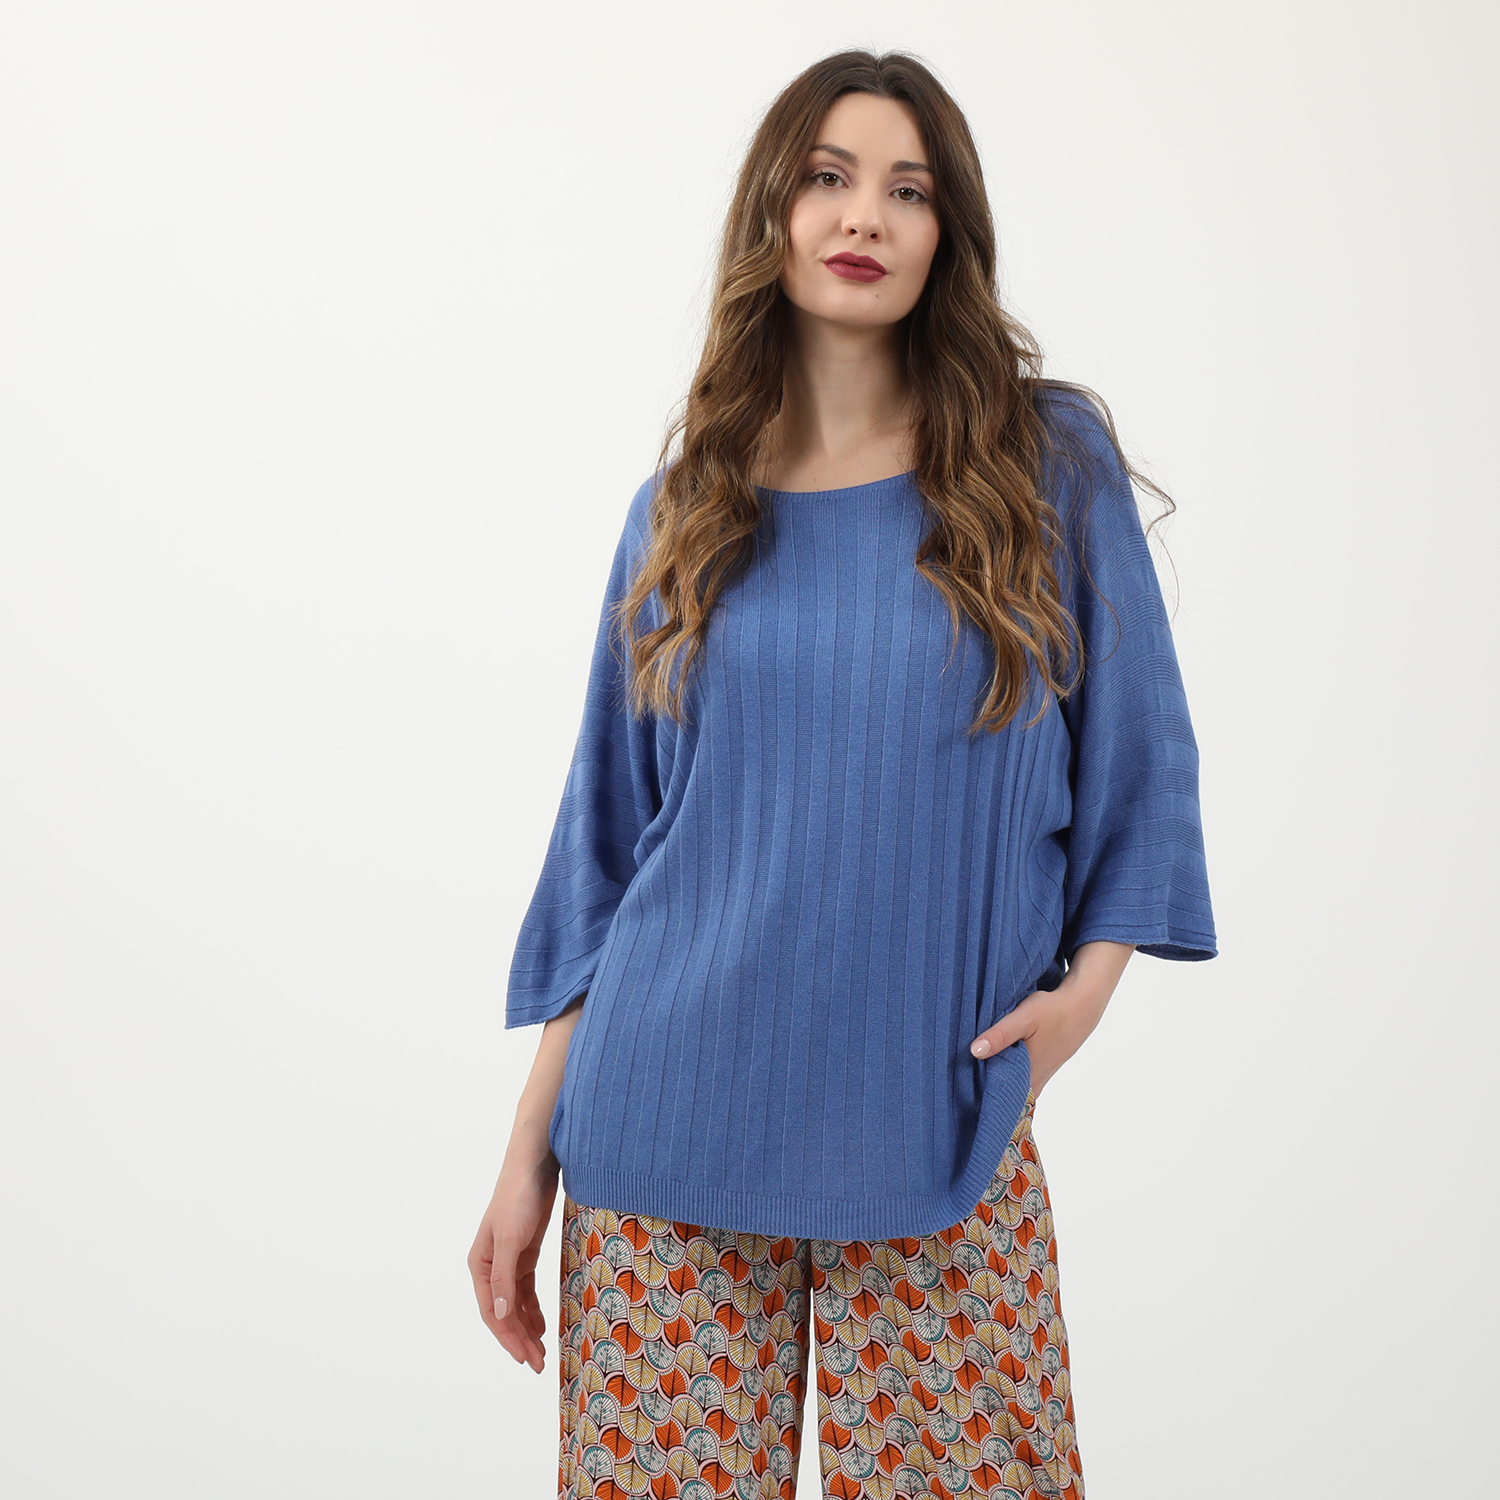 Γυναικεία/Ρούχα/Μπλούζες/Μακρυμάνικες ATTRATTIVO - Γυναικείο ελαφρύ πλεκτό ATTRATTIVO μπλε